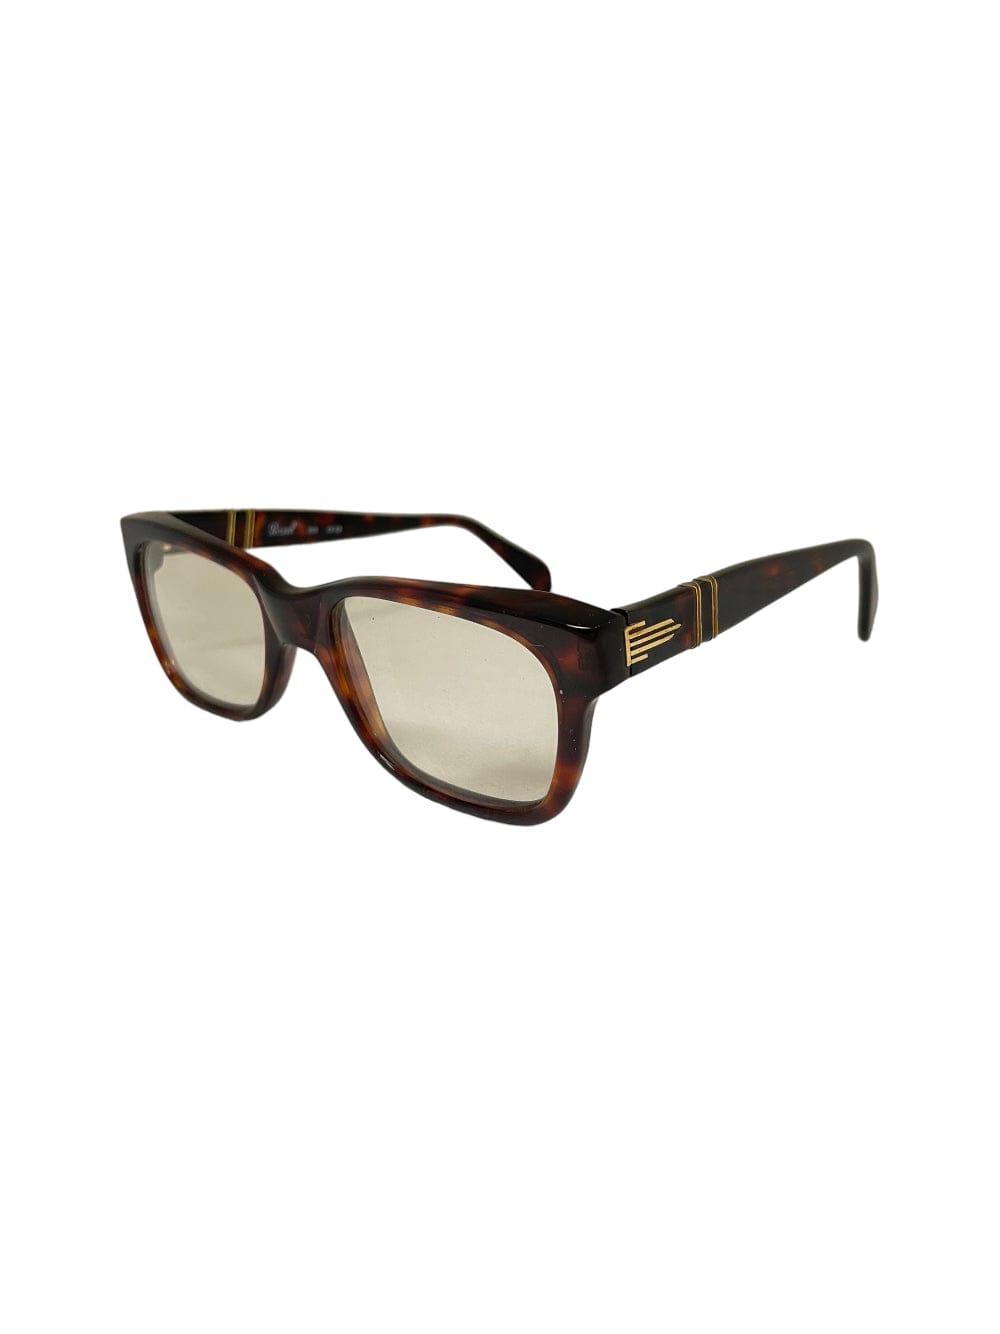 Shop Persol 305 - Havana Sunglasses